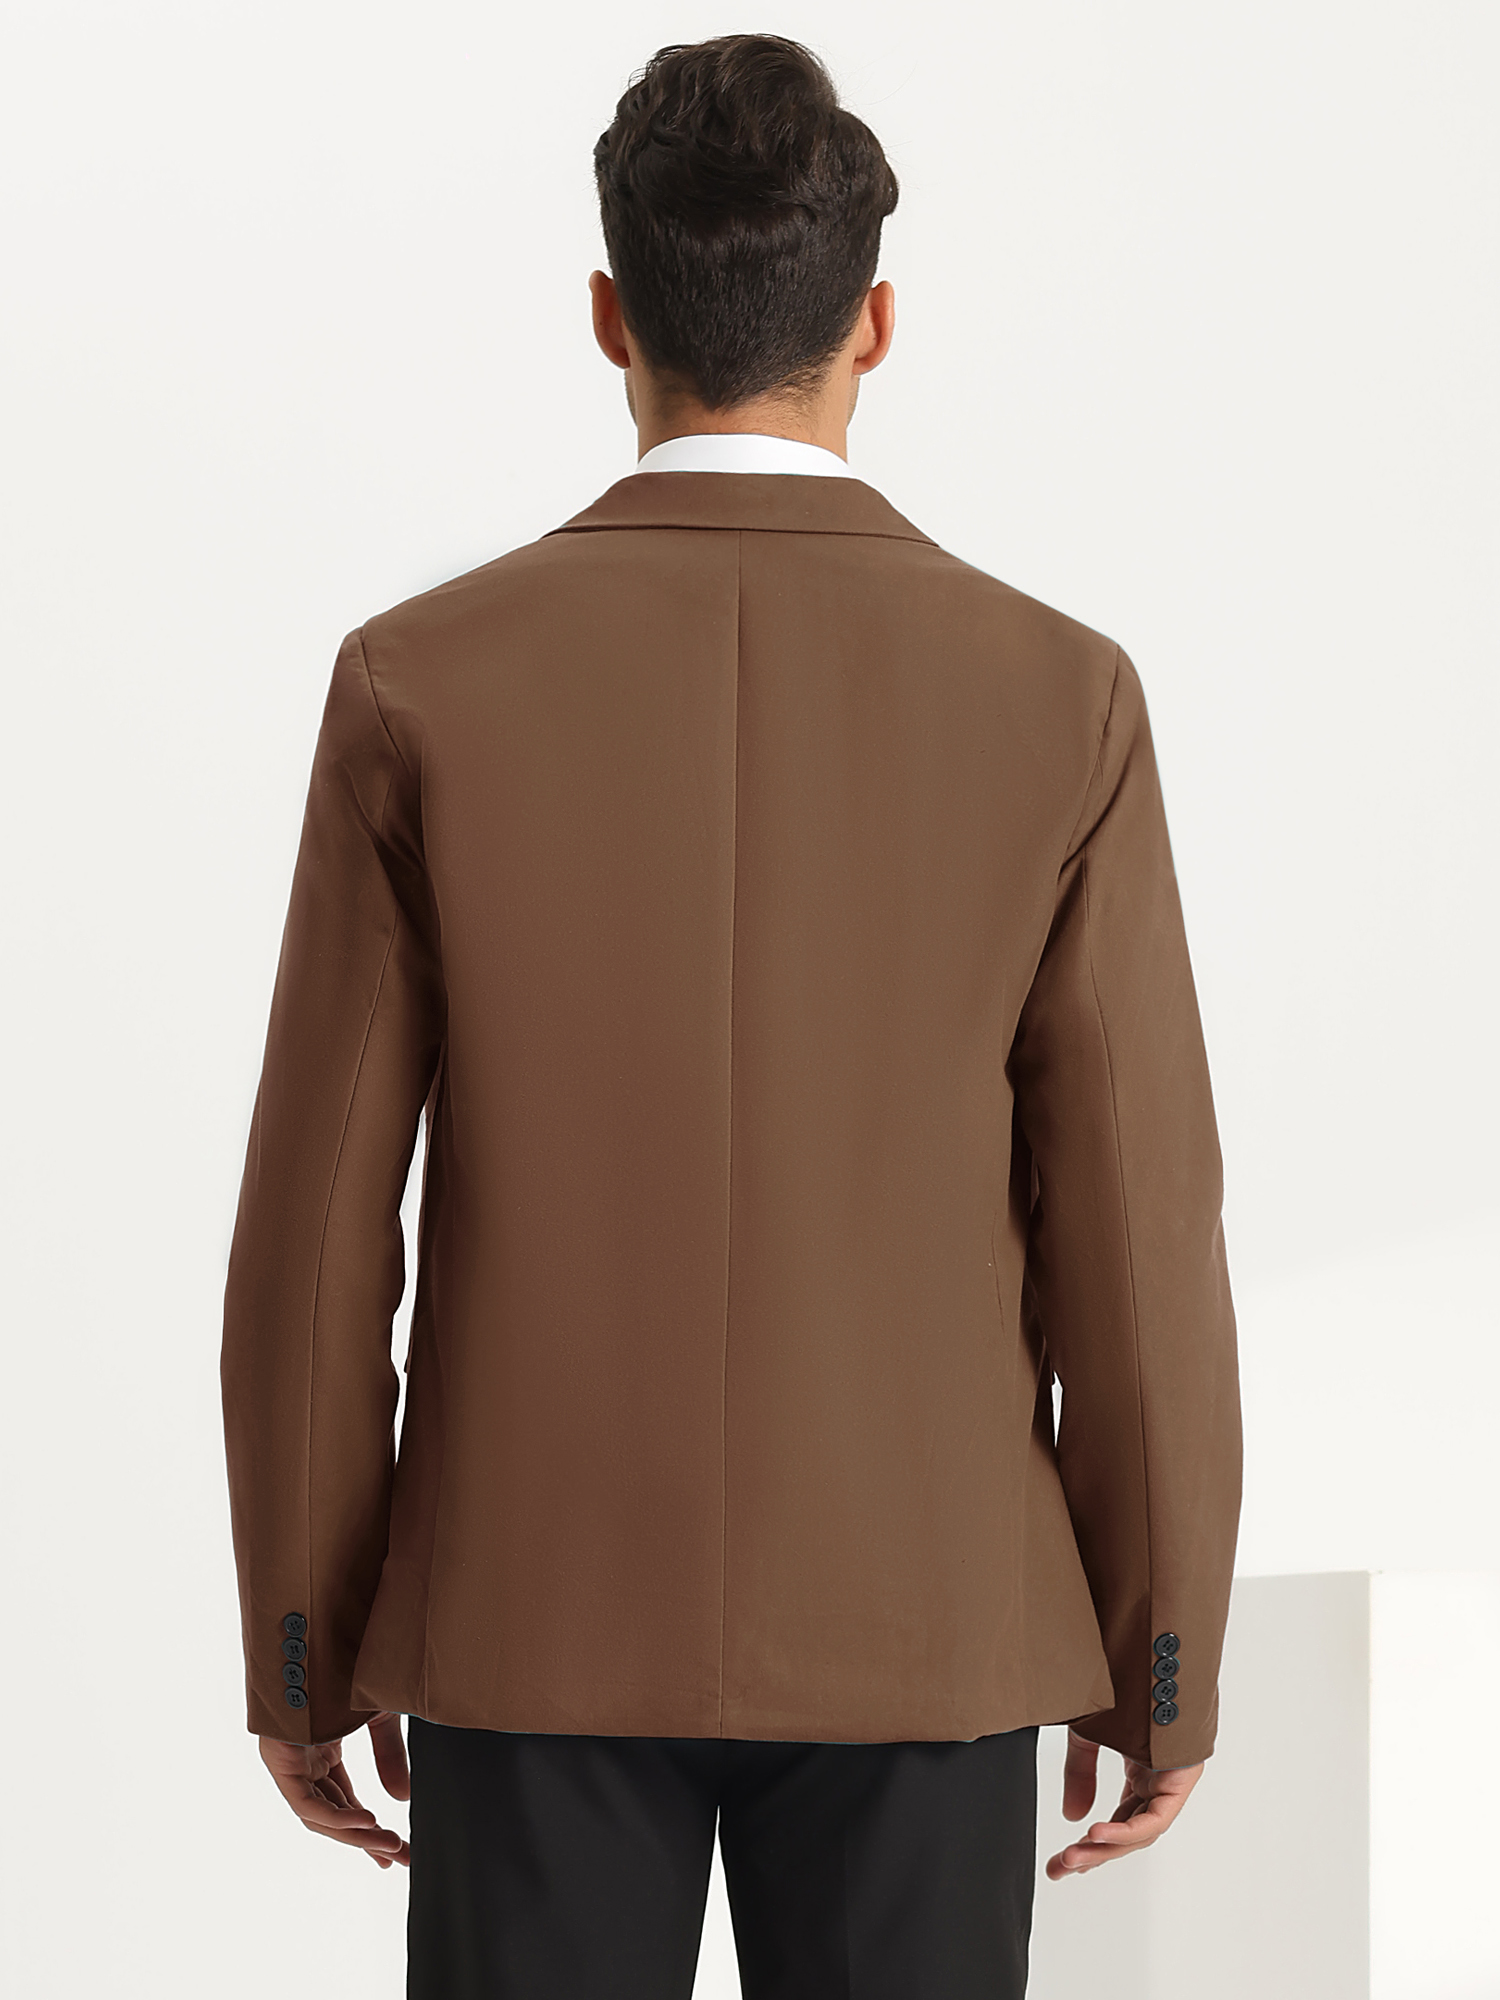 Unique Bargains Suit Blazer for Men's Slim Fit One Button Notch Lapel Business Sports Coats